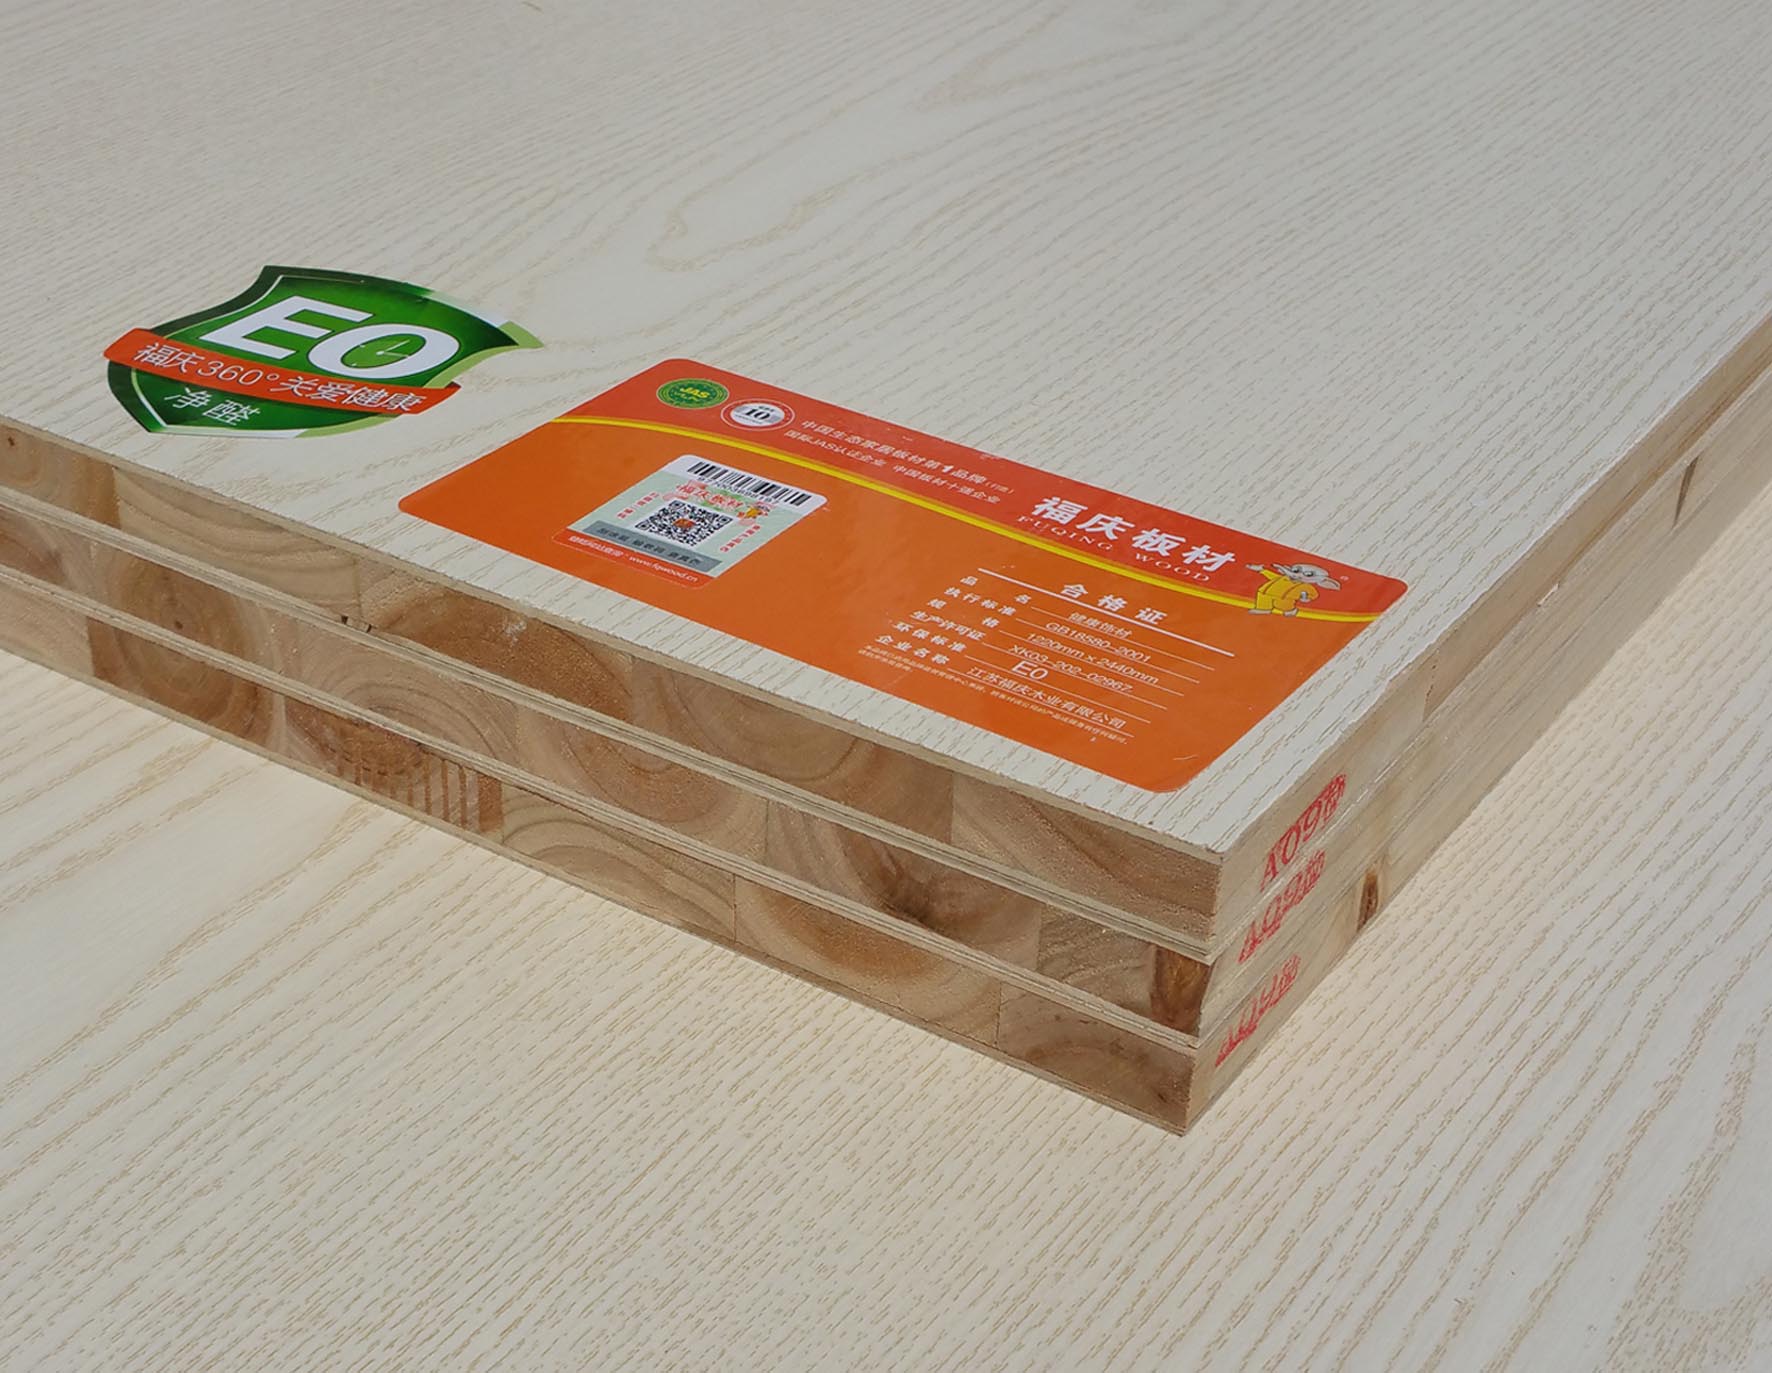 供应板材十大品牌福庆杉木整拼生态板 生态板 杉木生态板 福庆板材 生态板价格 生态板品牌图片